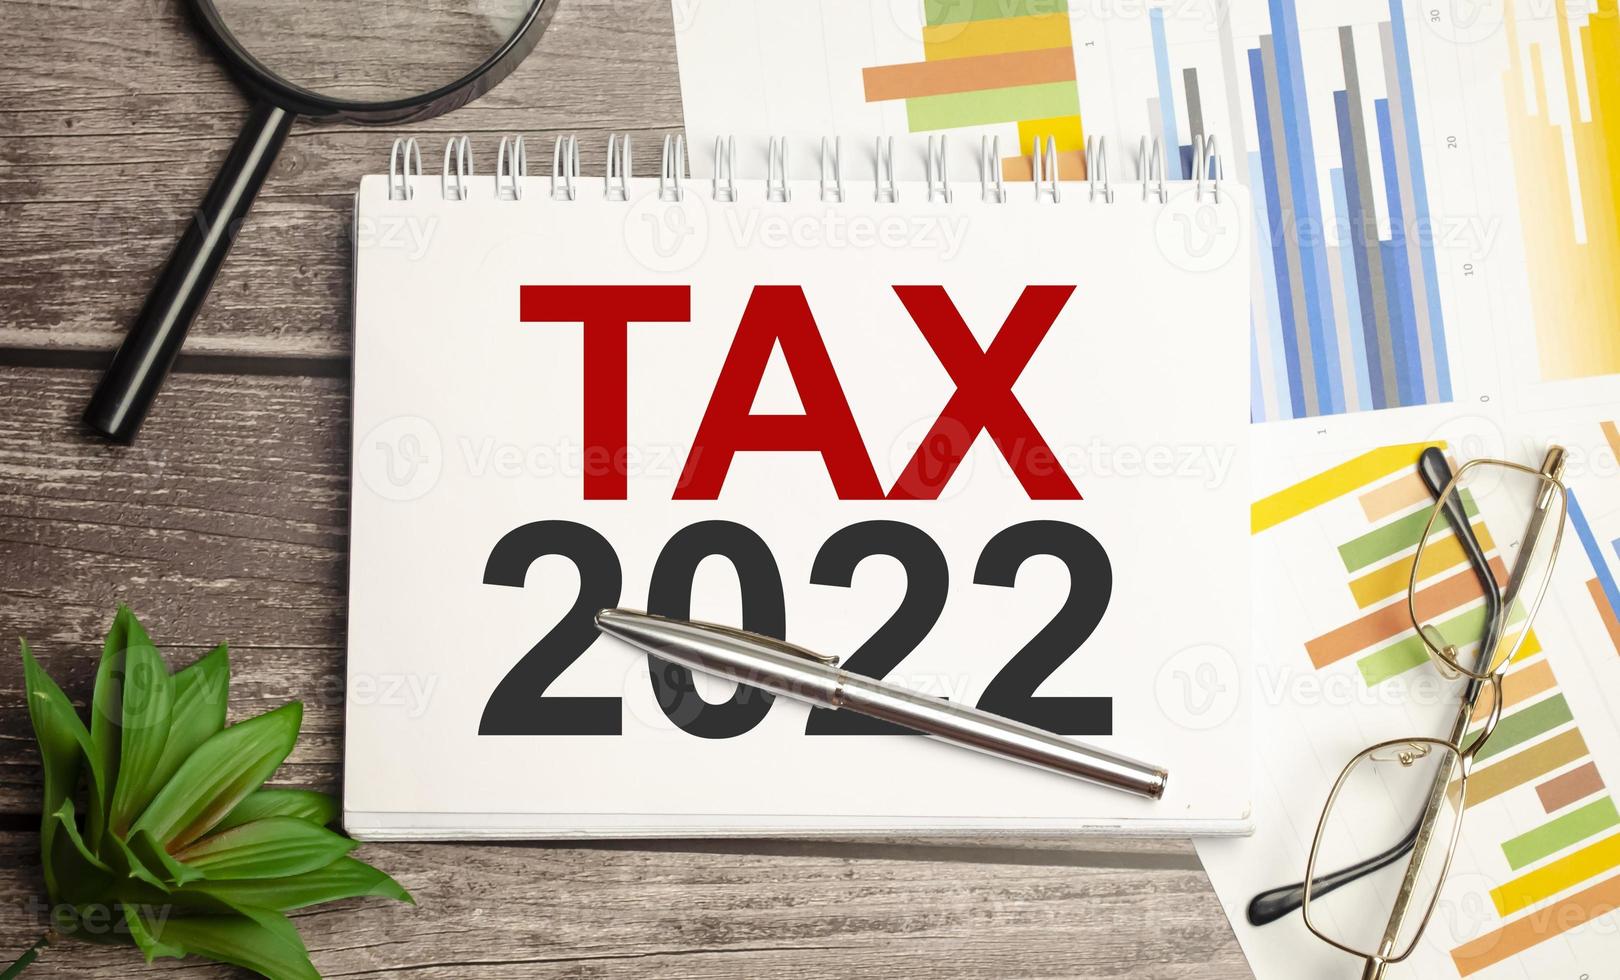 impôt 2022, régime fiscal. mot sur cahier blanc et graphiques photo